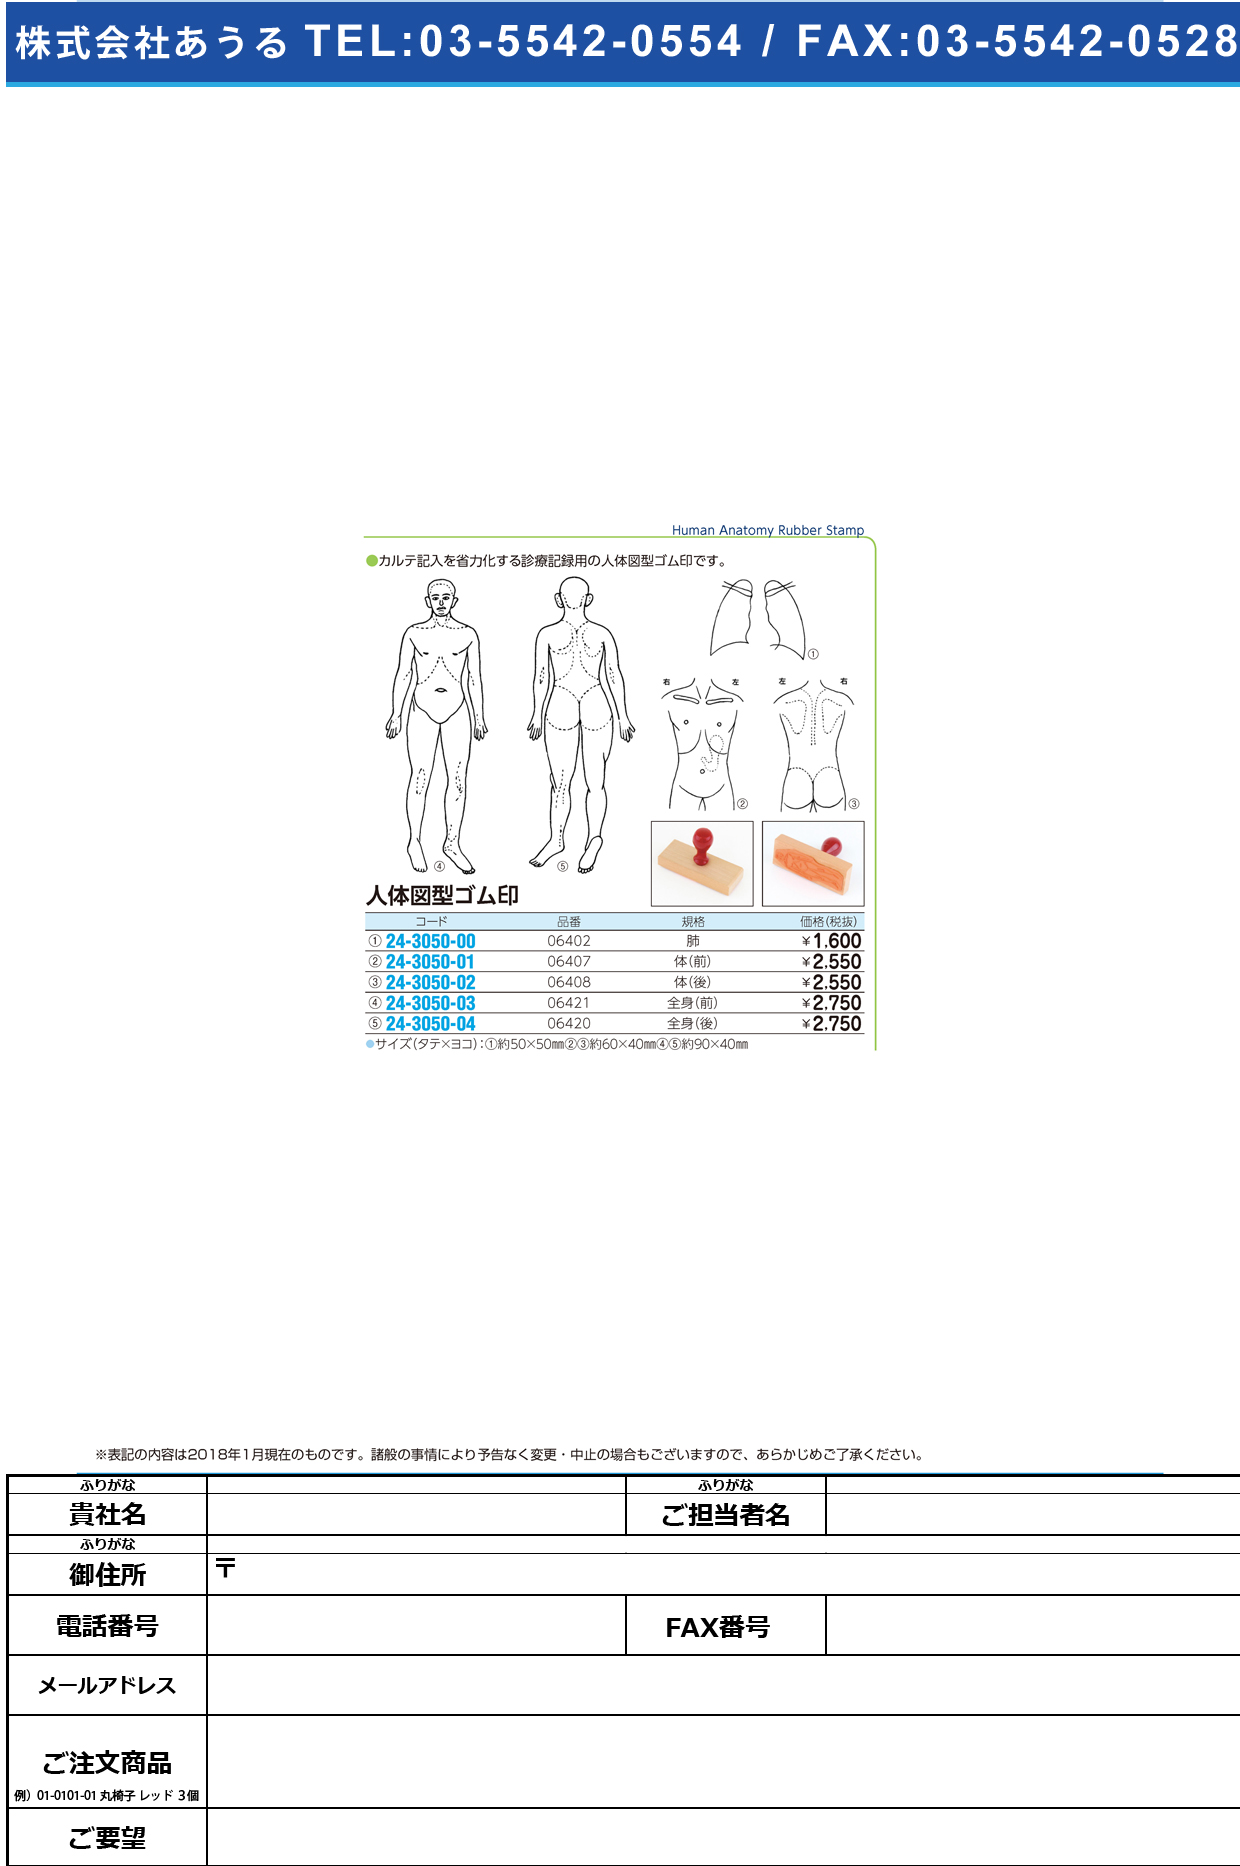 (24-3050-01)人体図型ゴム印（体・前向き） 06407 ｼﾞﾝﾀｲｽﾞｹｲｺﾞﾑｲﾝ(ｶﾗﾀﾞ【1個単位】【2019年カタログ商品】